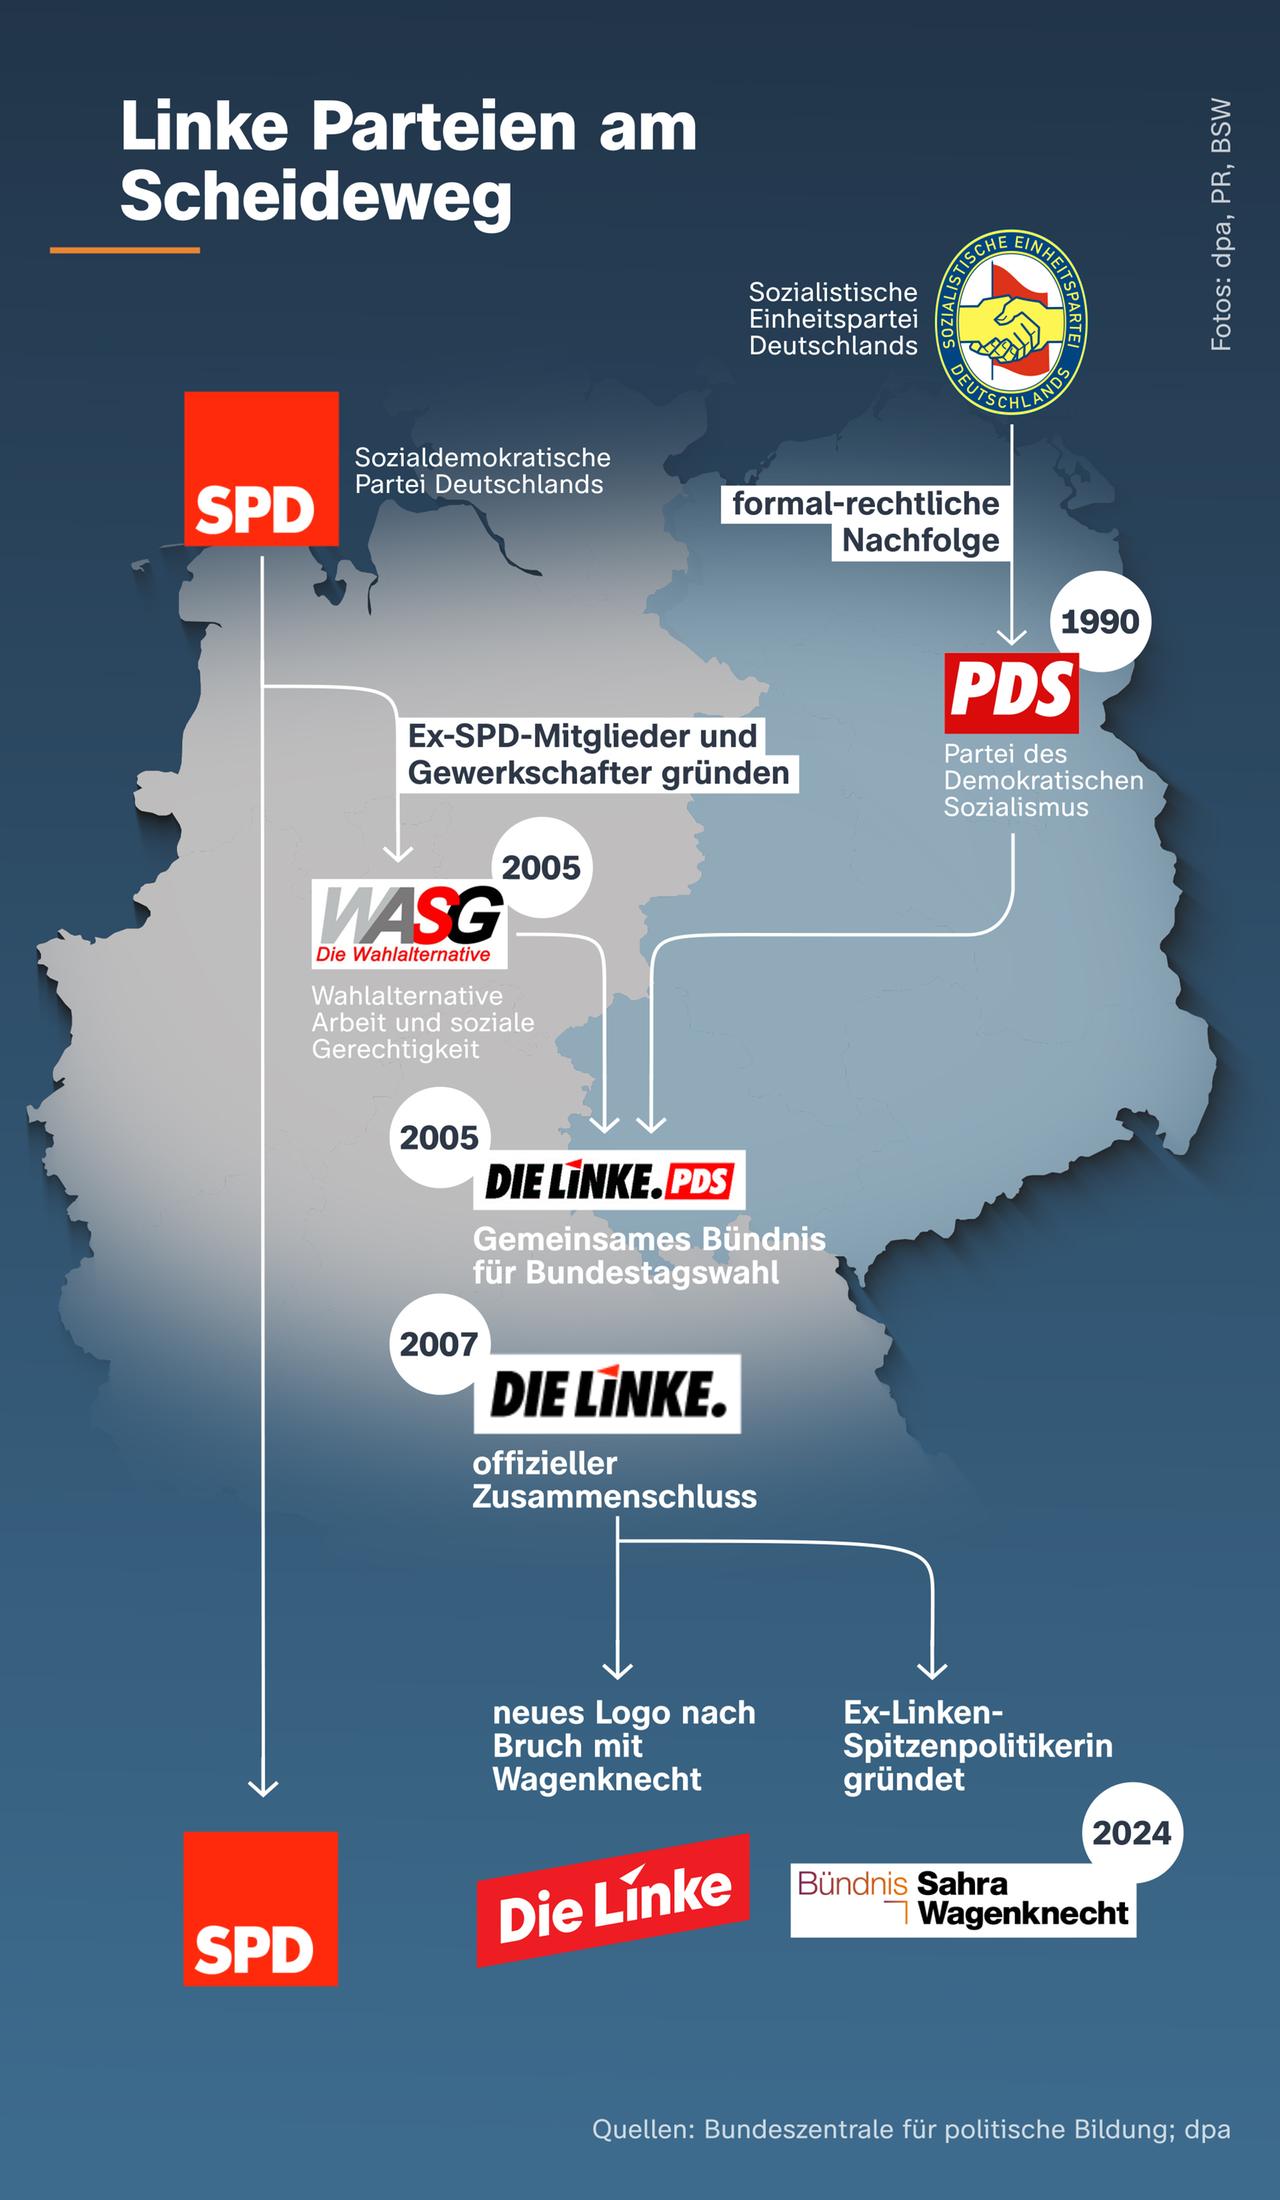 Die Grafik zeigt Abspaltungen und Fusionen linker Parteien in Deutschland. 2004 gründeten Ex-SPD-Mitglieder und Gewerkschafter die WASG, die sich mit der PDS zur Linken zusammenschloss. 2023 spaltete sich das Bündnis Sahra Wagenknecht von der Linken ab.